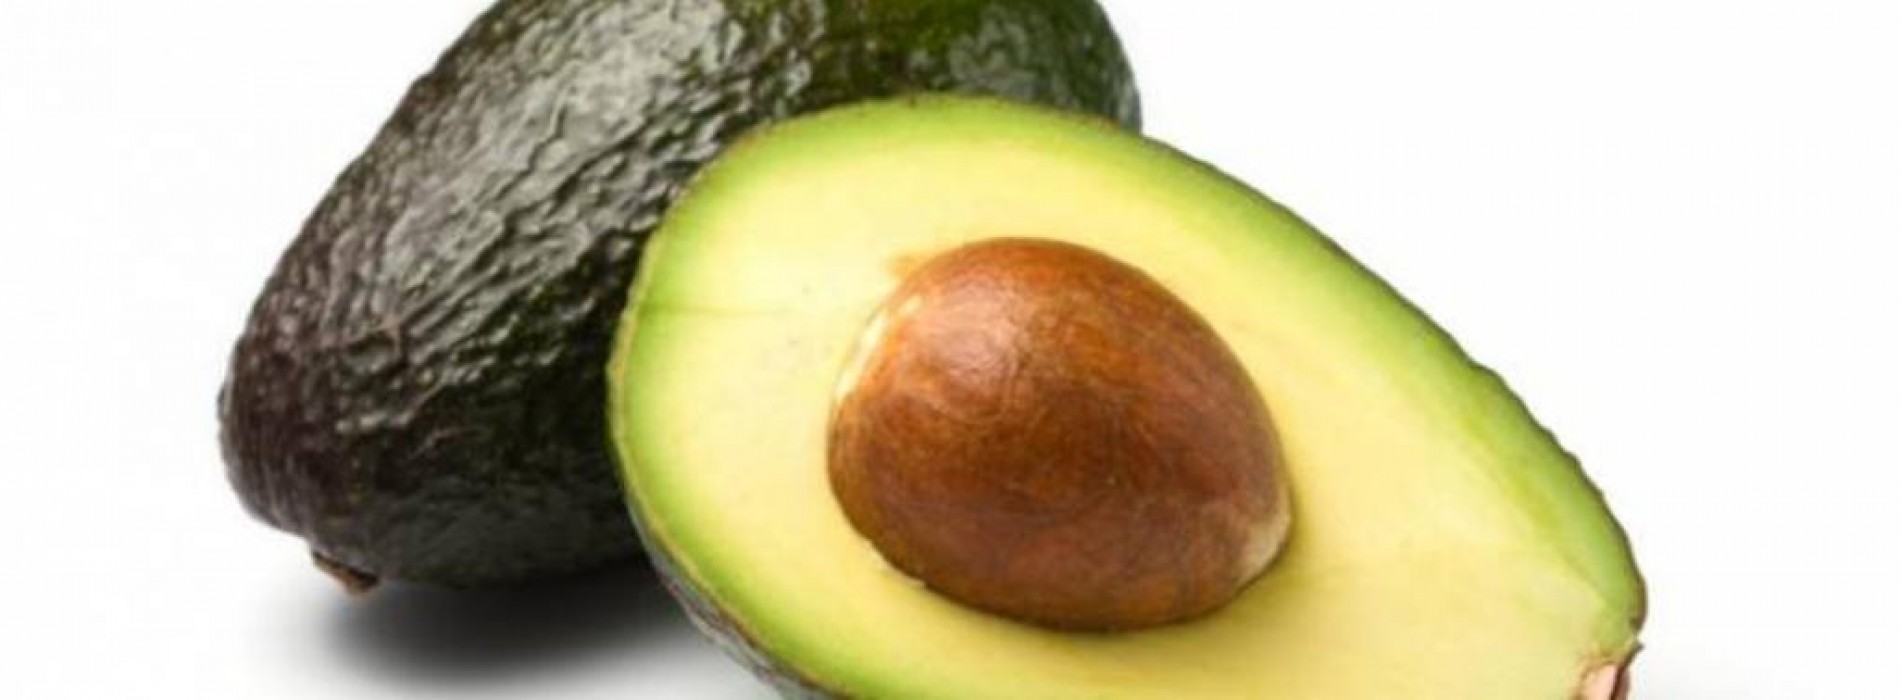 Laat je eigen avocado’s groeien uit de pit